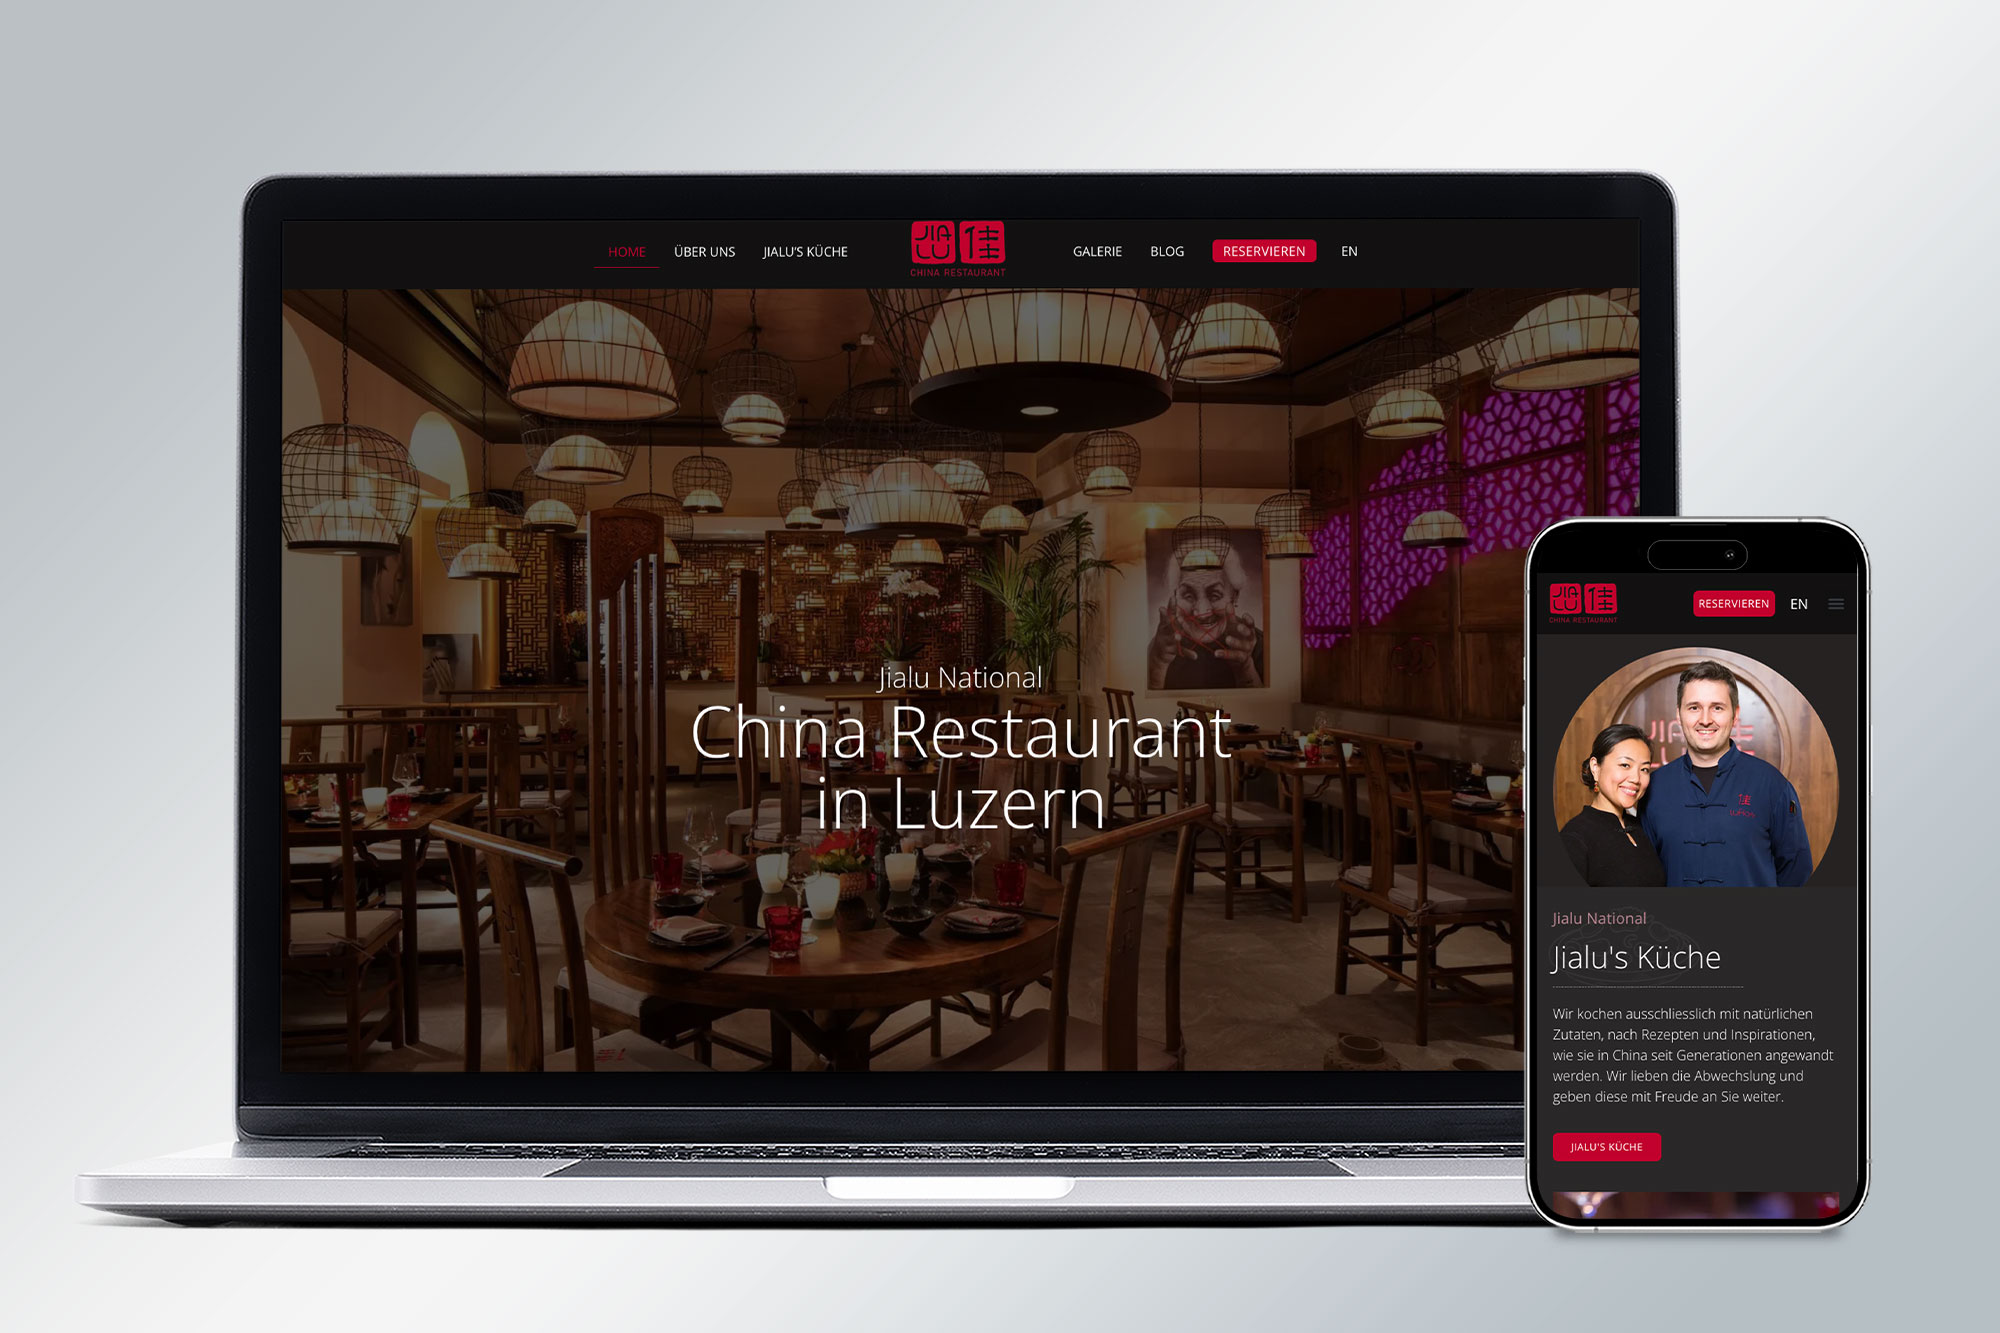 China Restaurant in Luzern